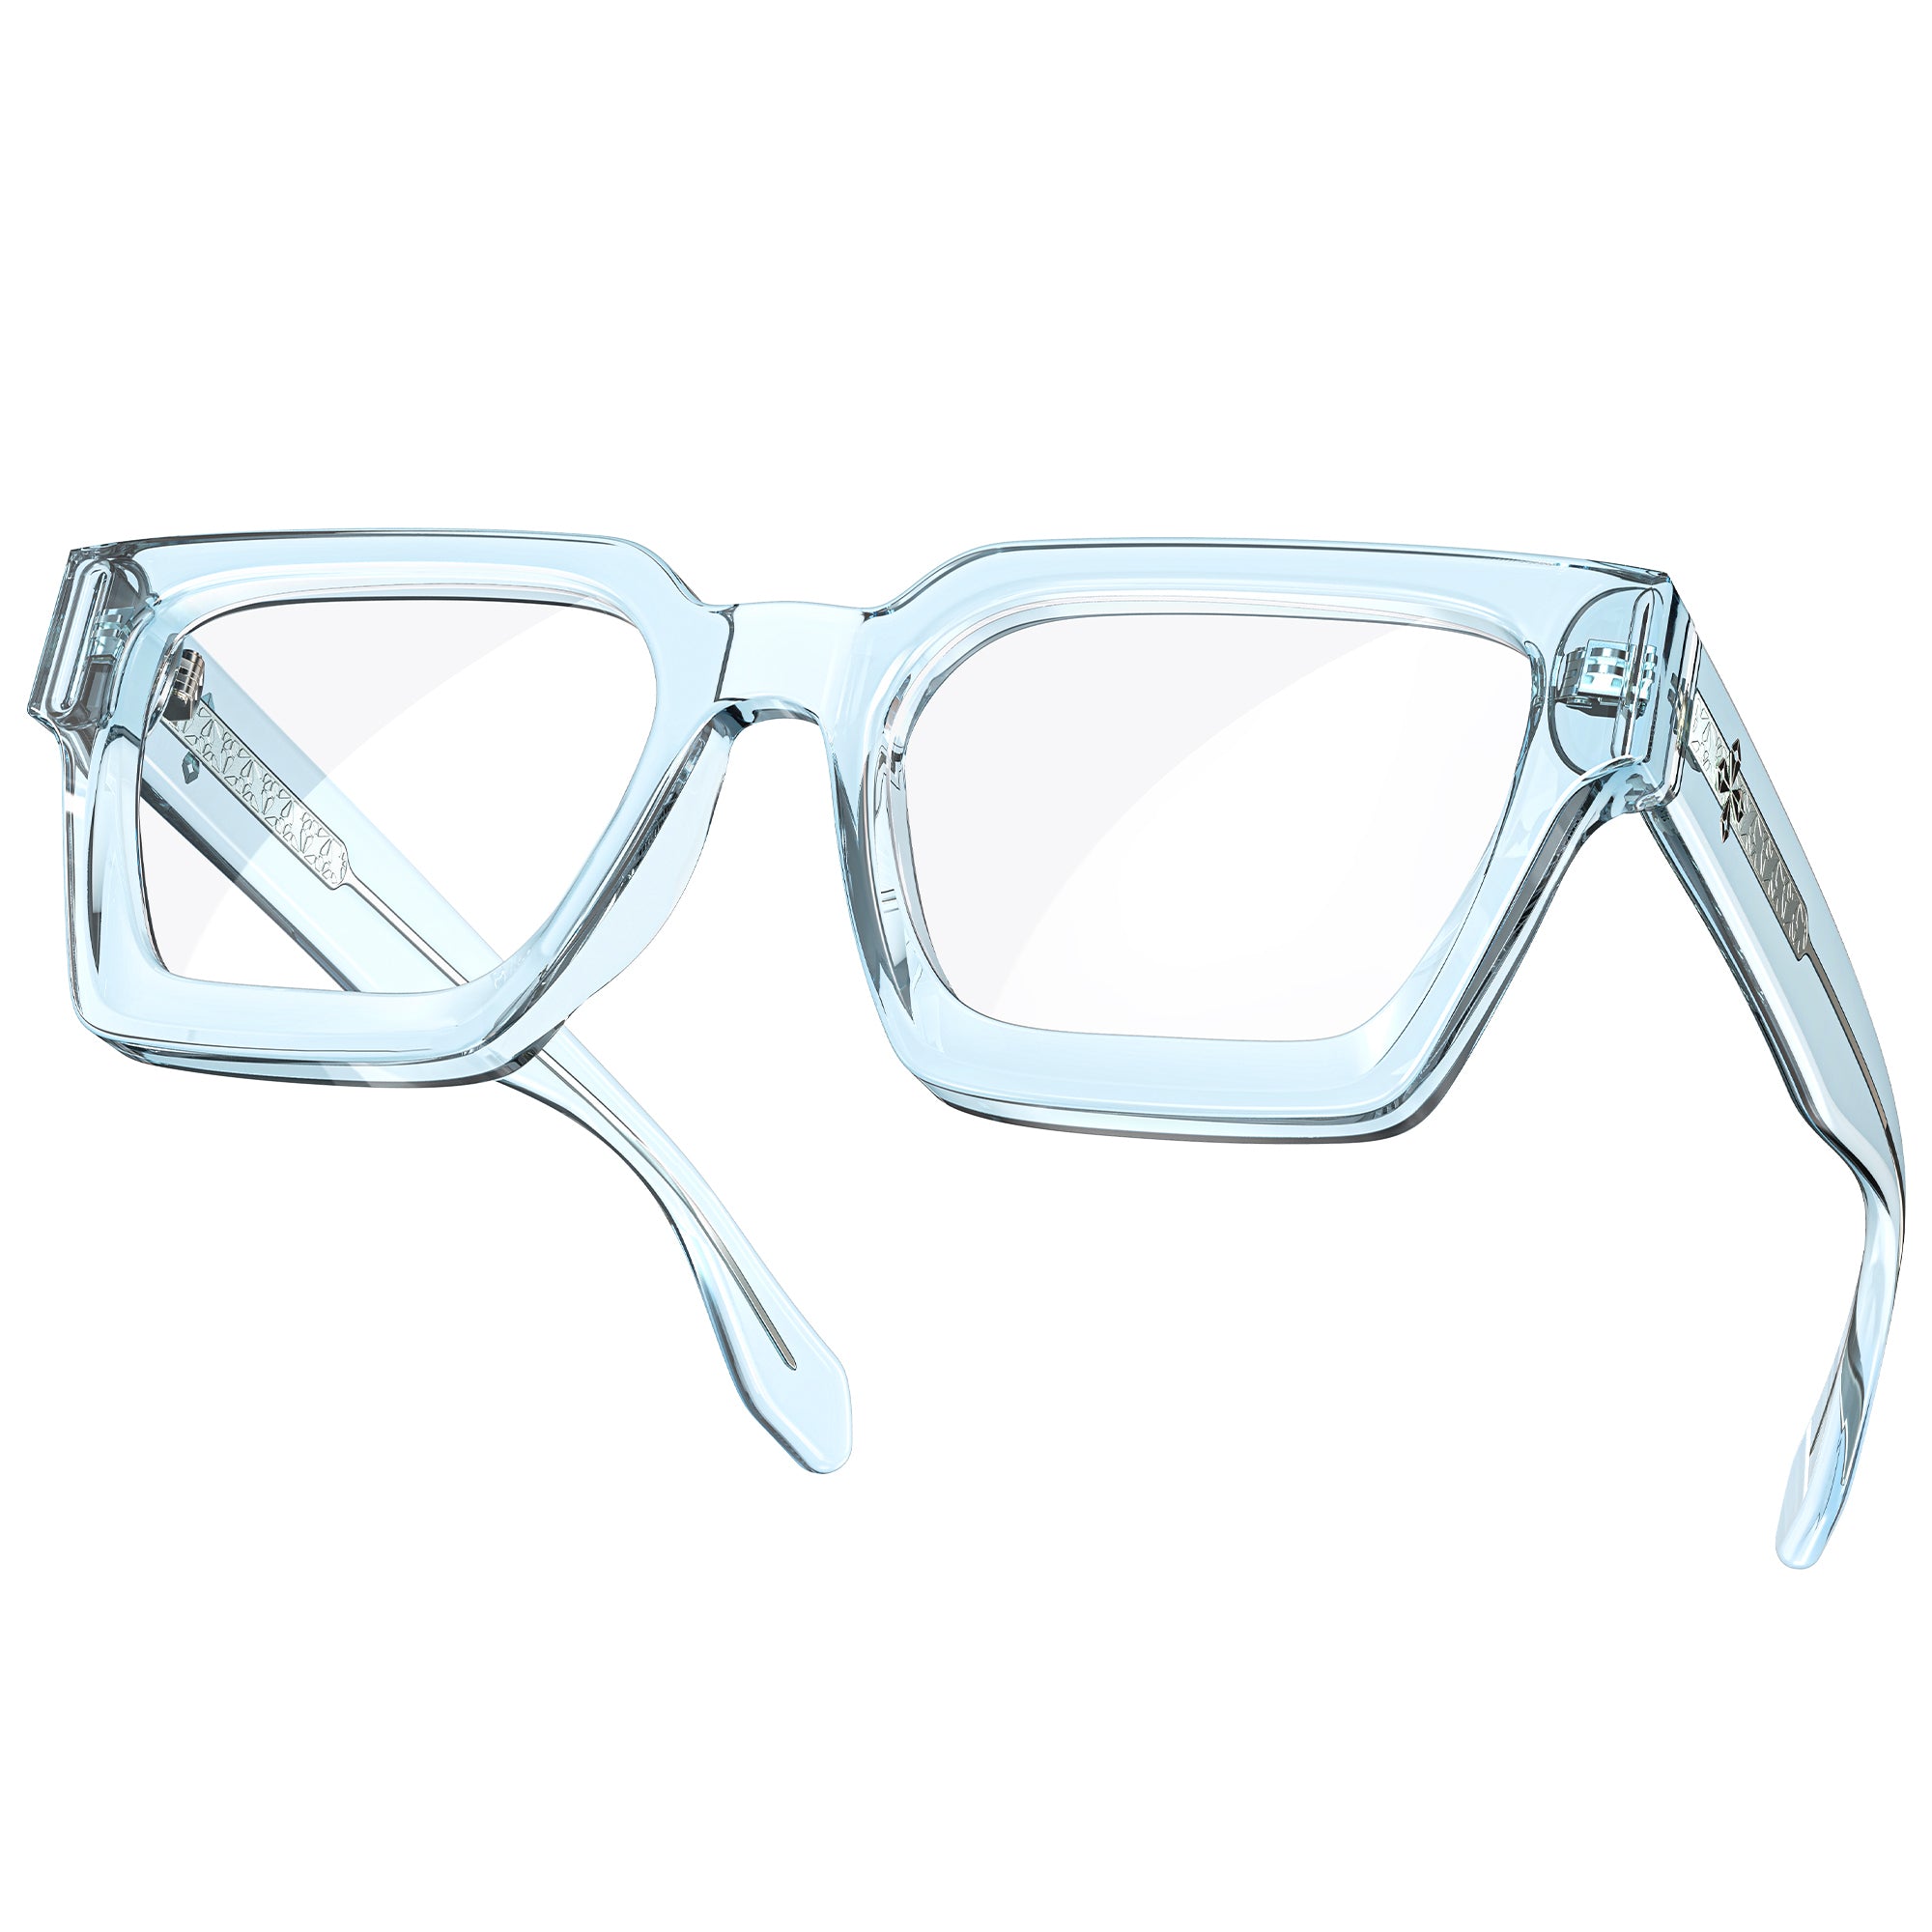 VisoOne River Square Tortoise Blue Light Blocking Glasses 50mm